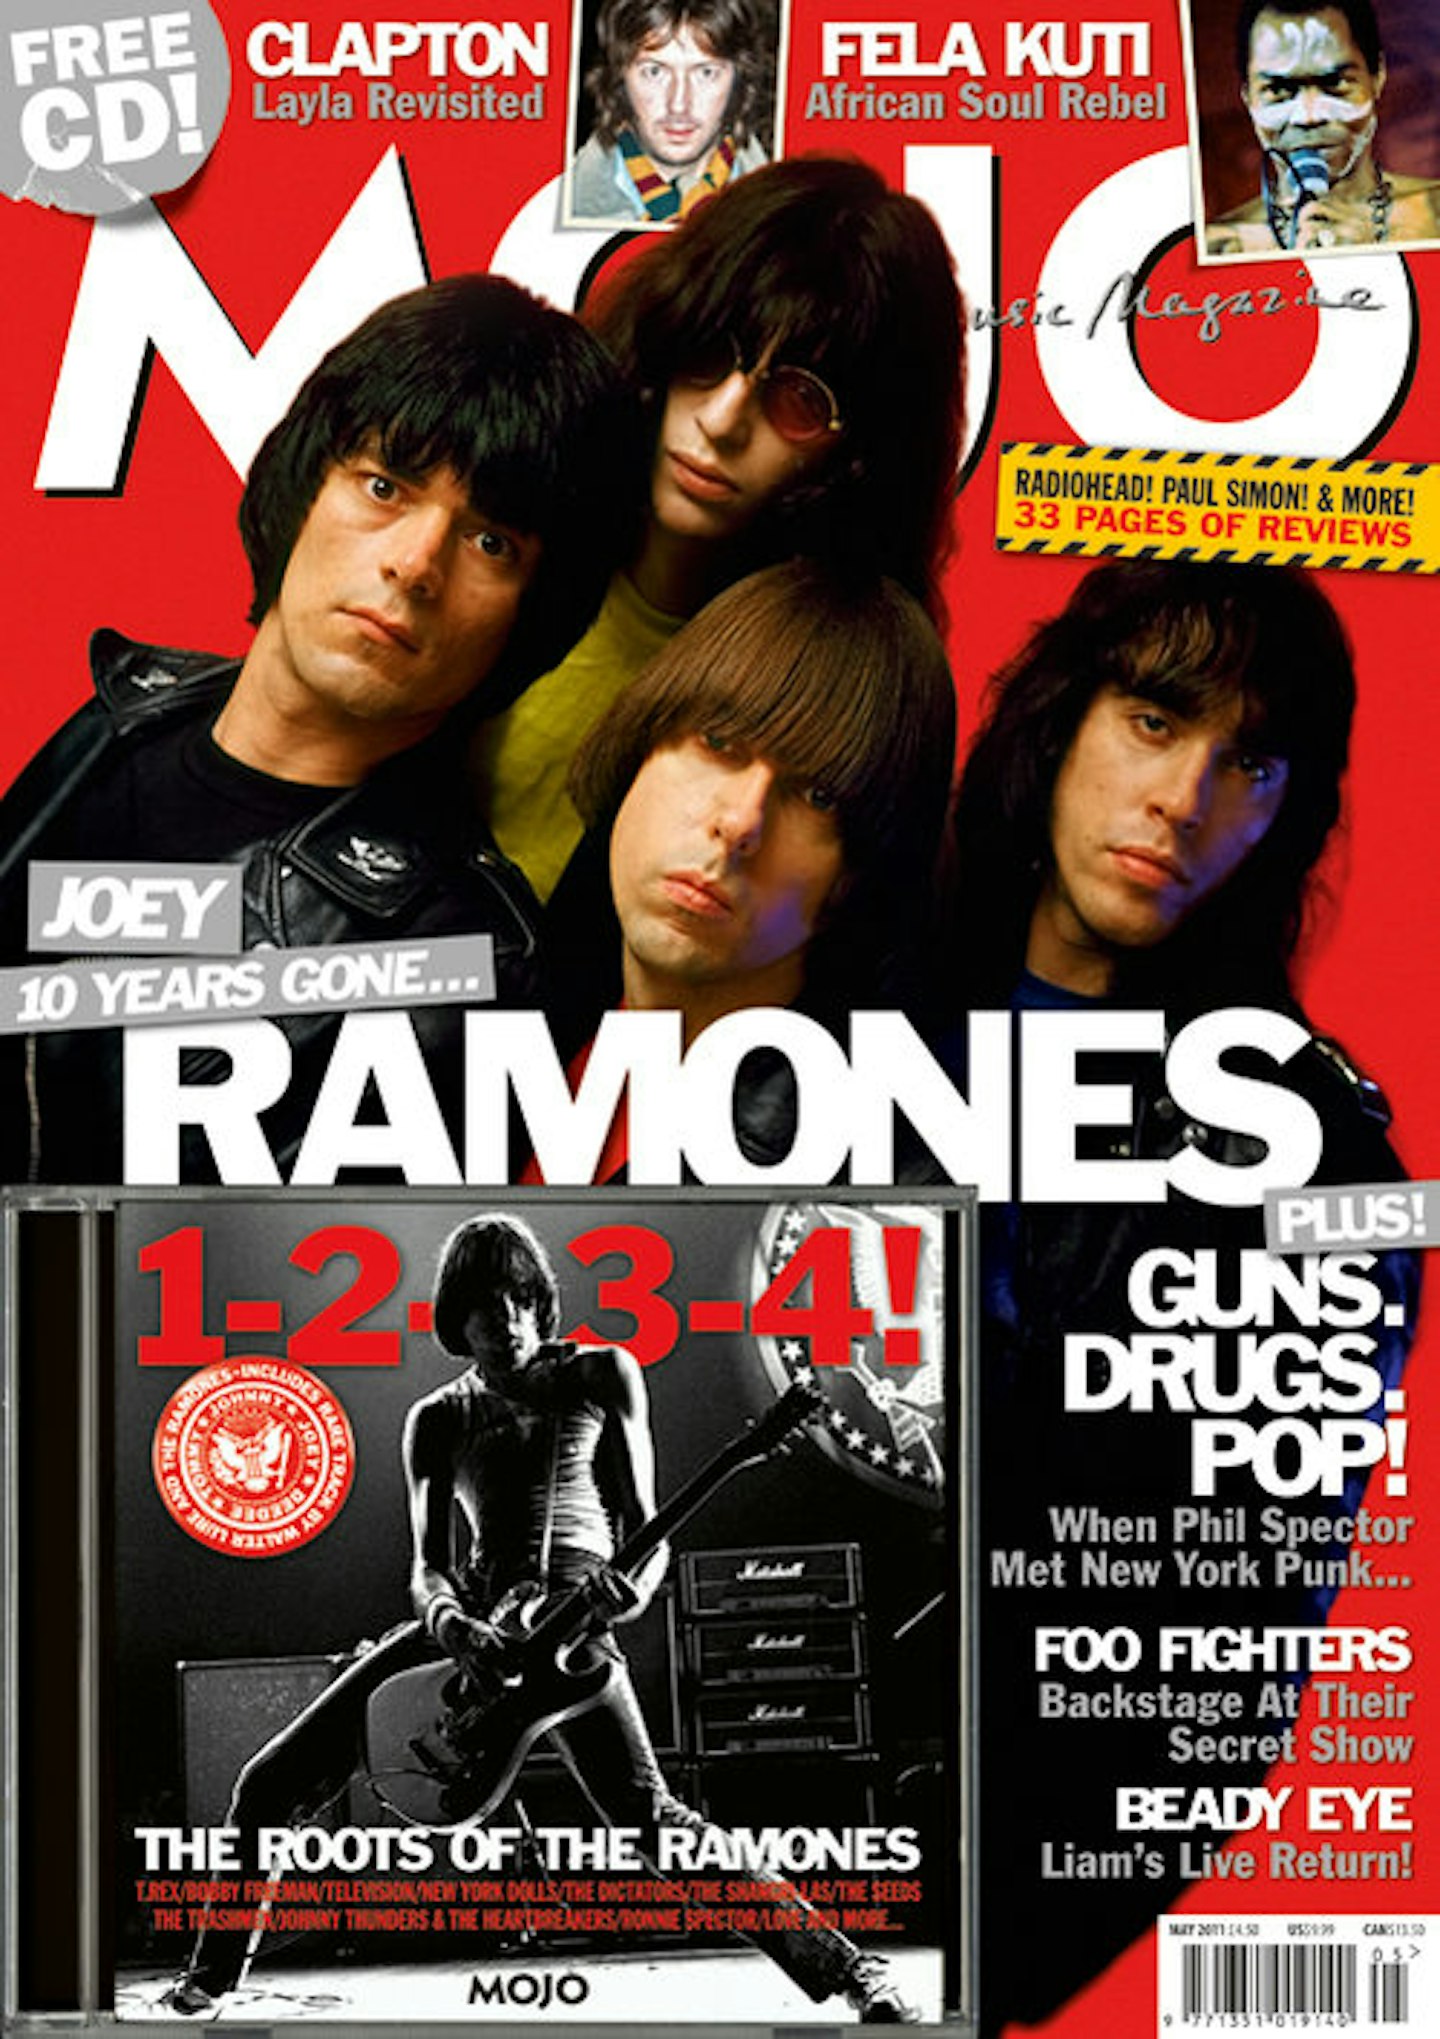 MOJO Issue 210 / May 2011